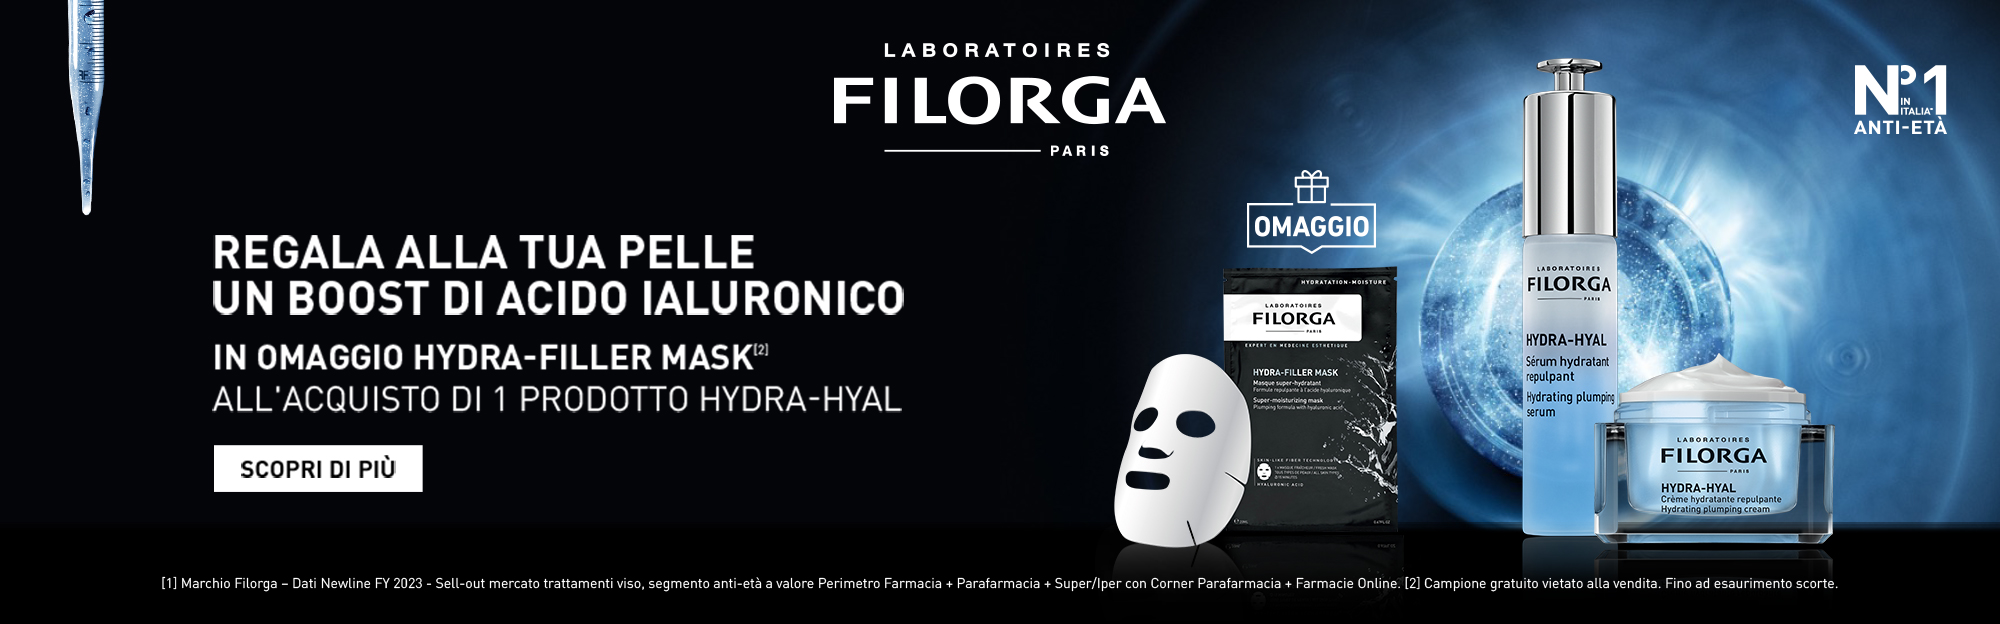 0000000000000000FarmaciaProcaccini_slideD_filorga-boost-acido-ialuronico-omaggio-hydra-filler-mask